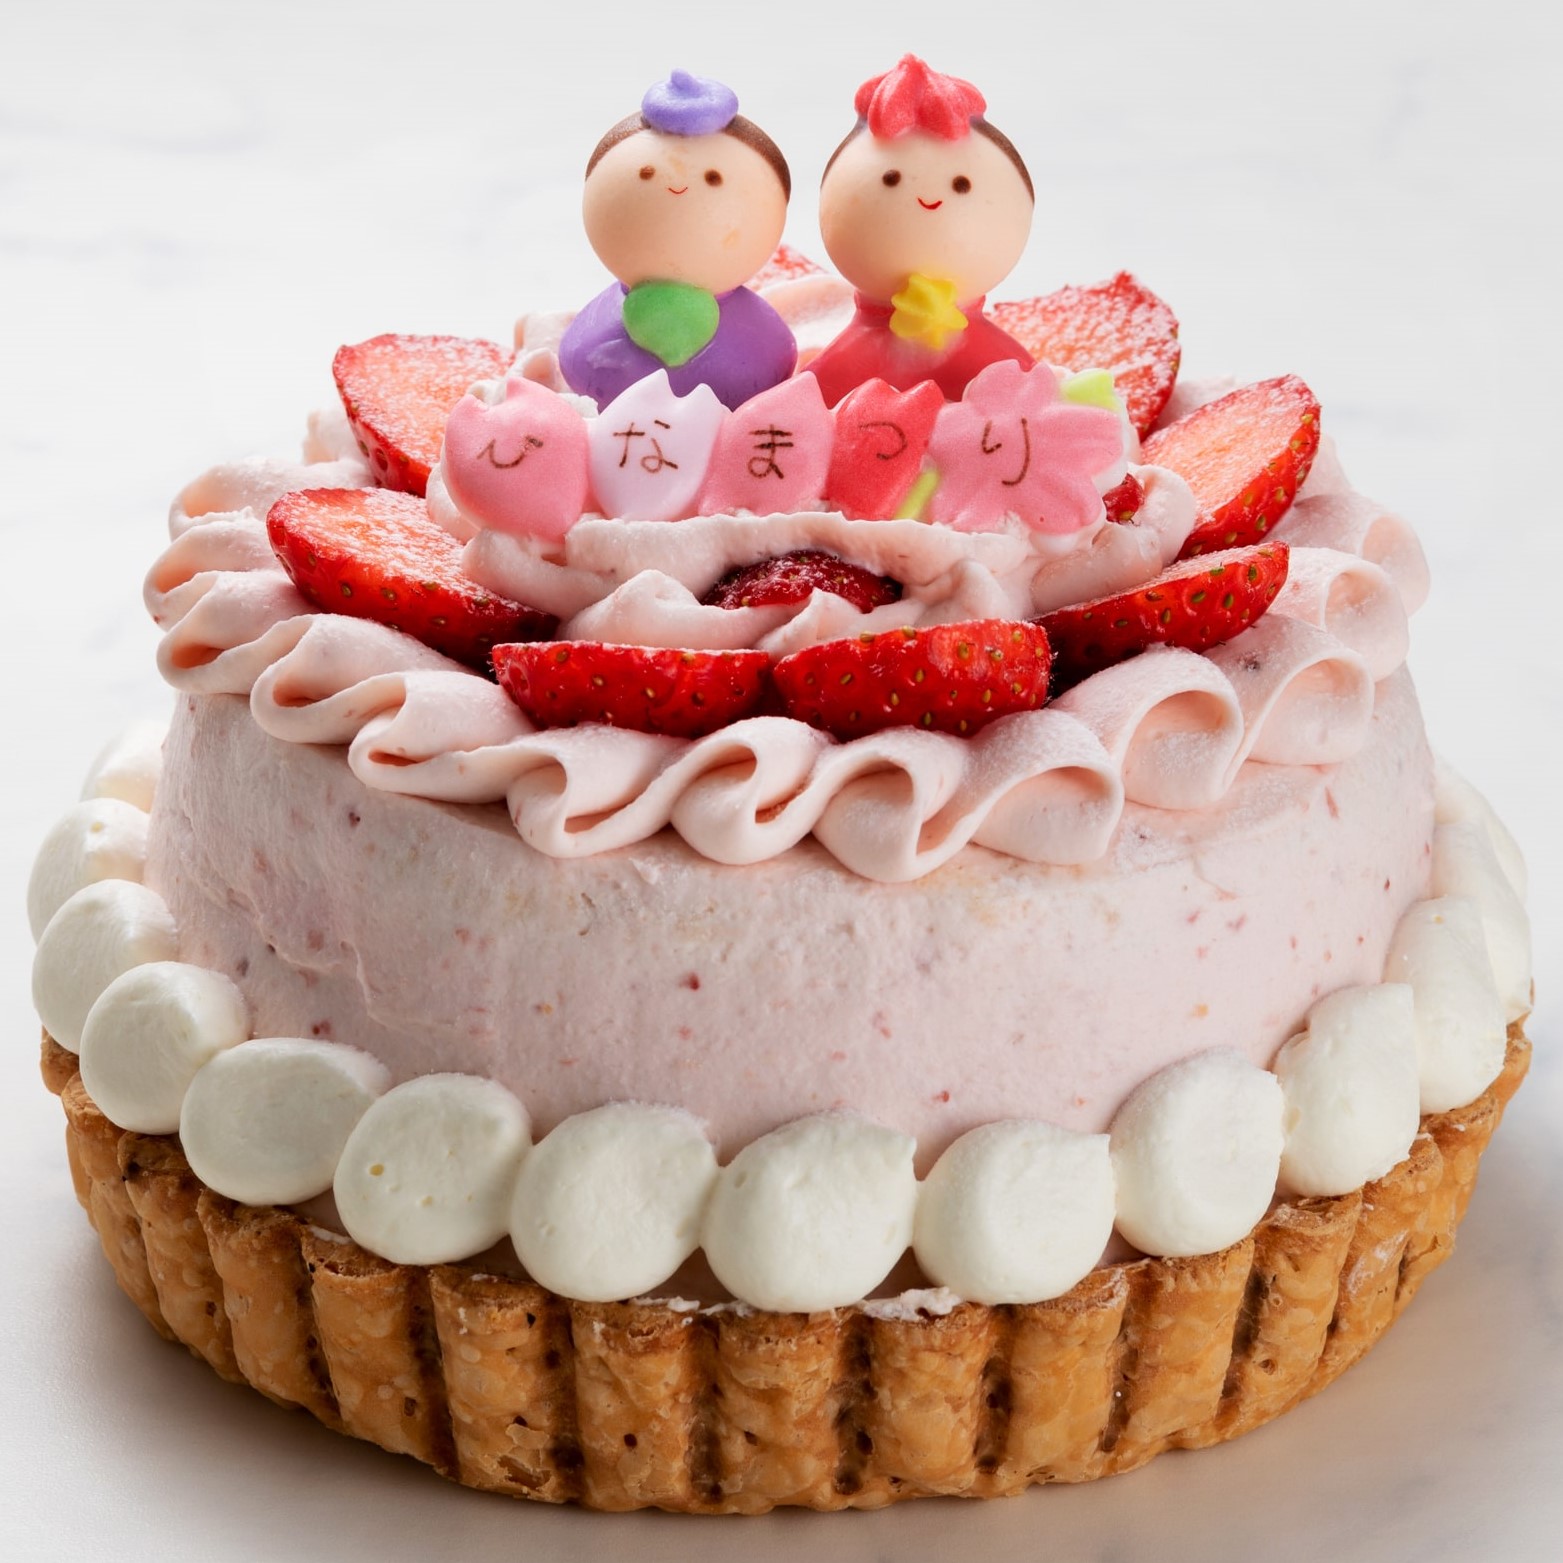 21 東武の ひなまつり を開催 おうちでお祝い 少人数用のオードブルやケーキに注目 ココシル池袋